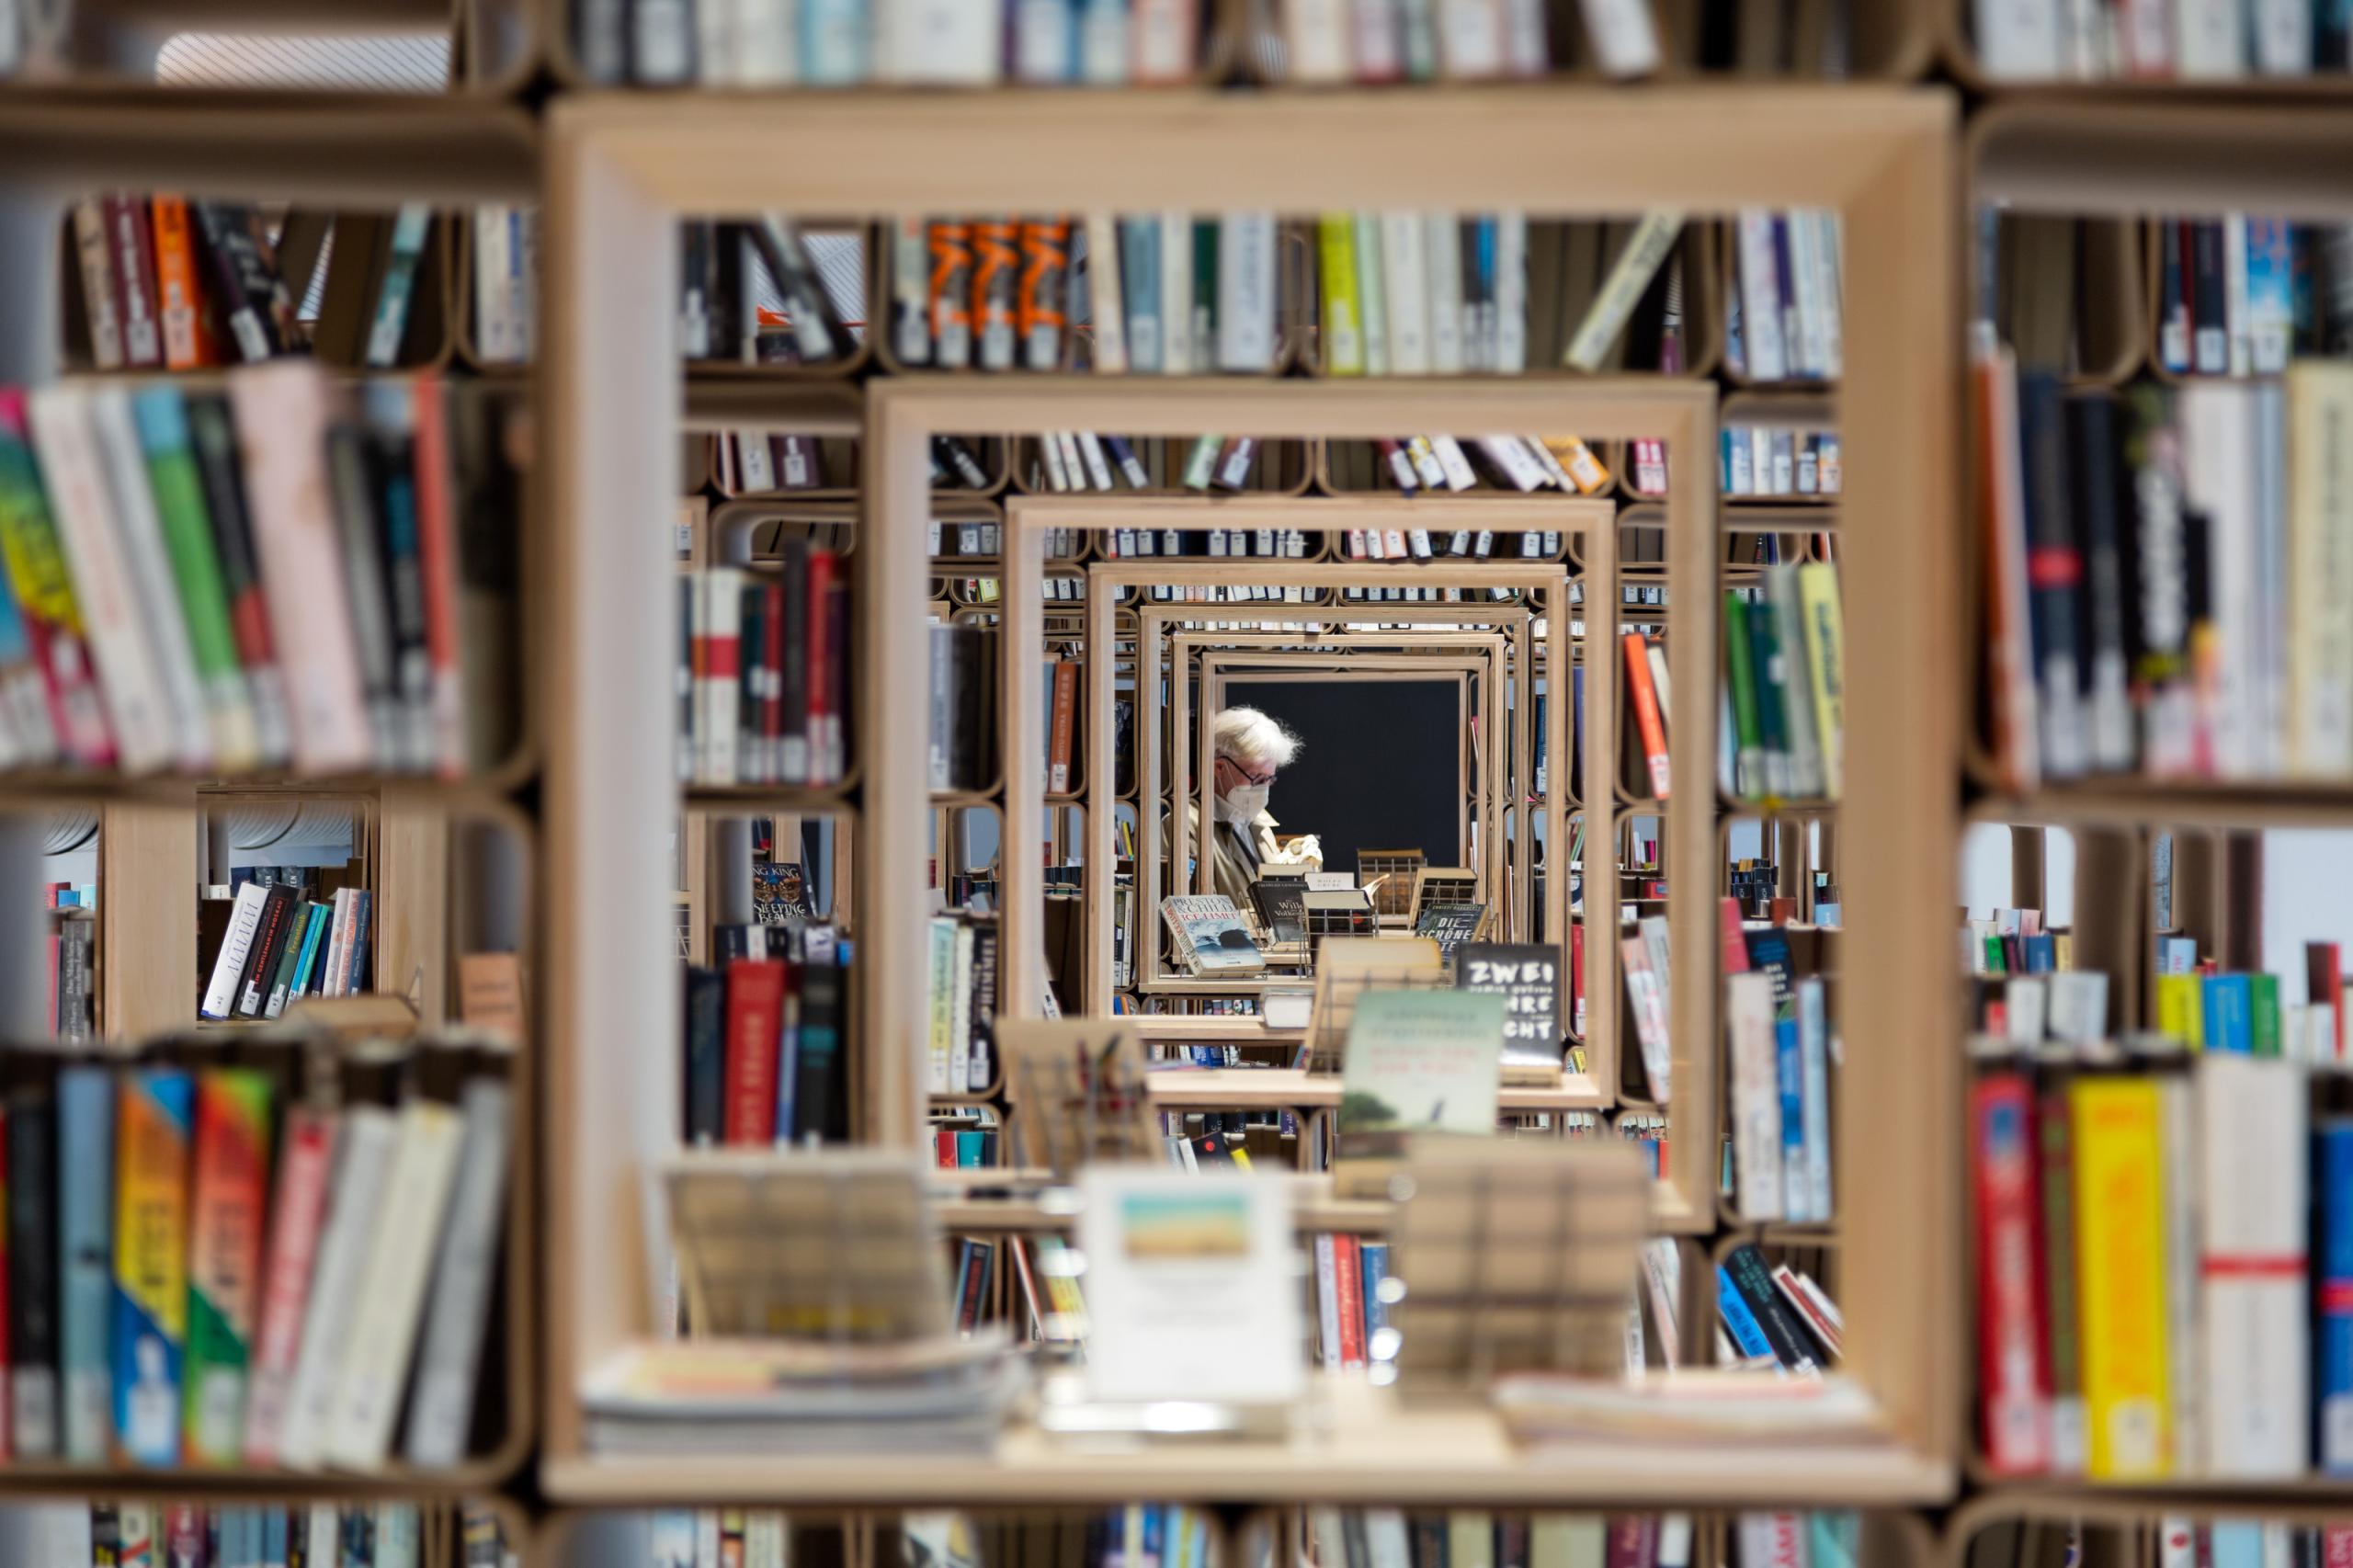 Bücherregale, in der Mitte durchbrochen, so dass man bis ans Ende des Raums durchblicken kann.